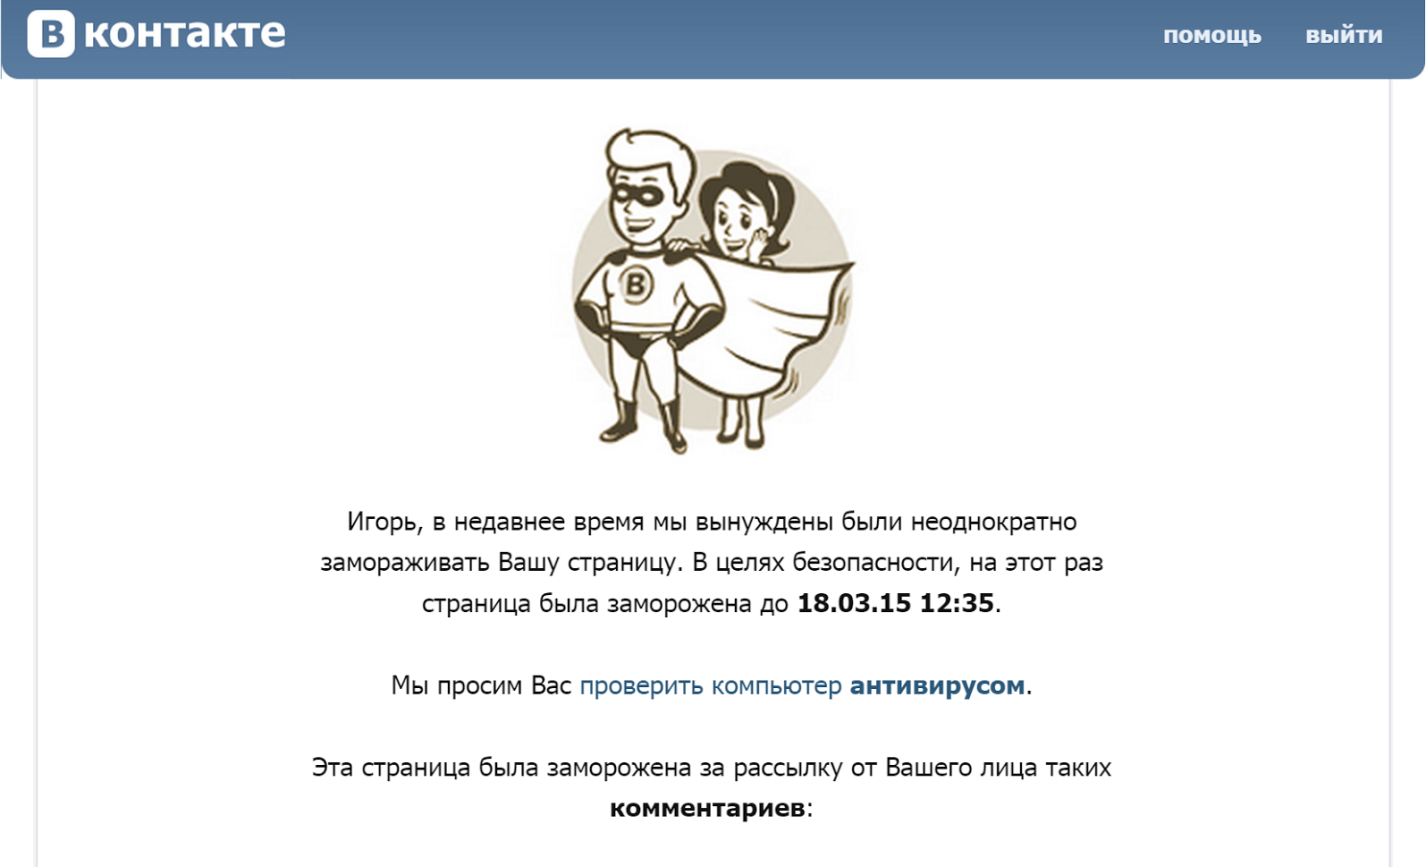 На сколько замораживают страницу в ВКонтакте